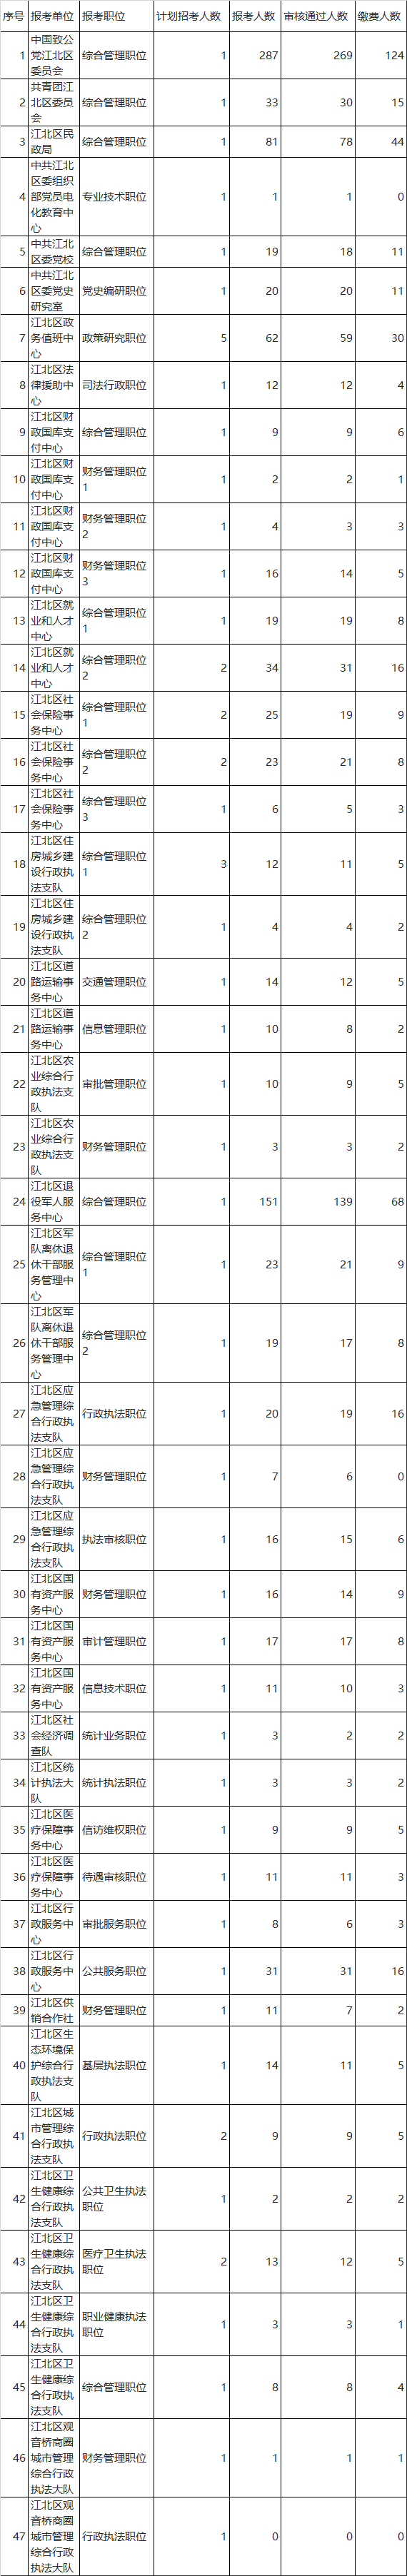 重庆市江北区2022年度公开遴选报名情况统计（截至6月14日）.png